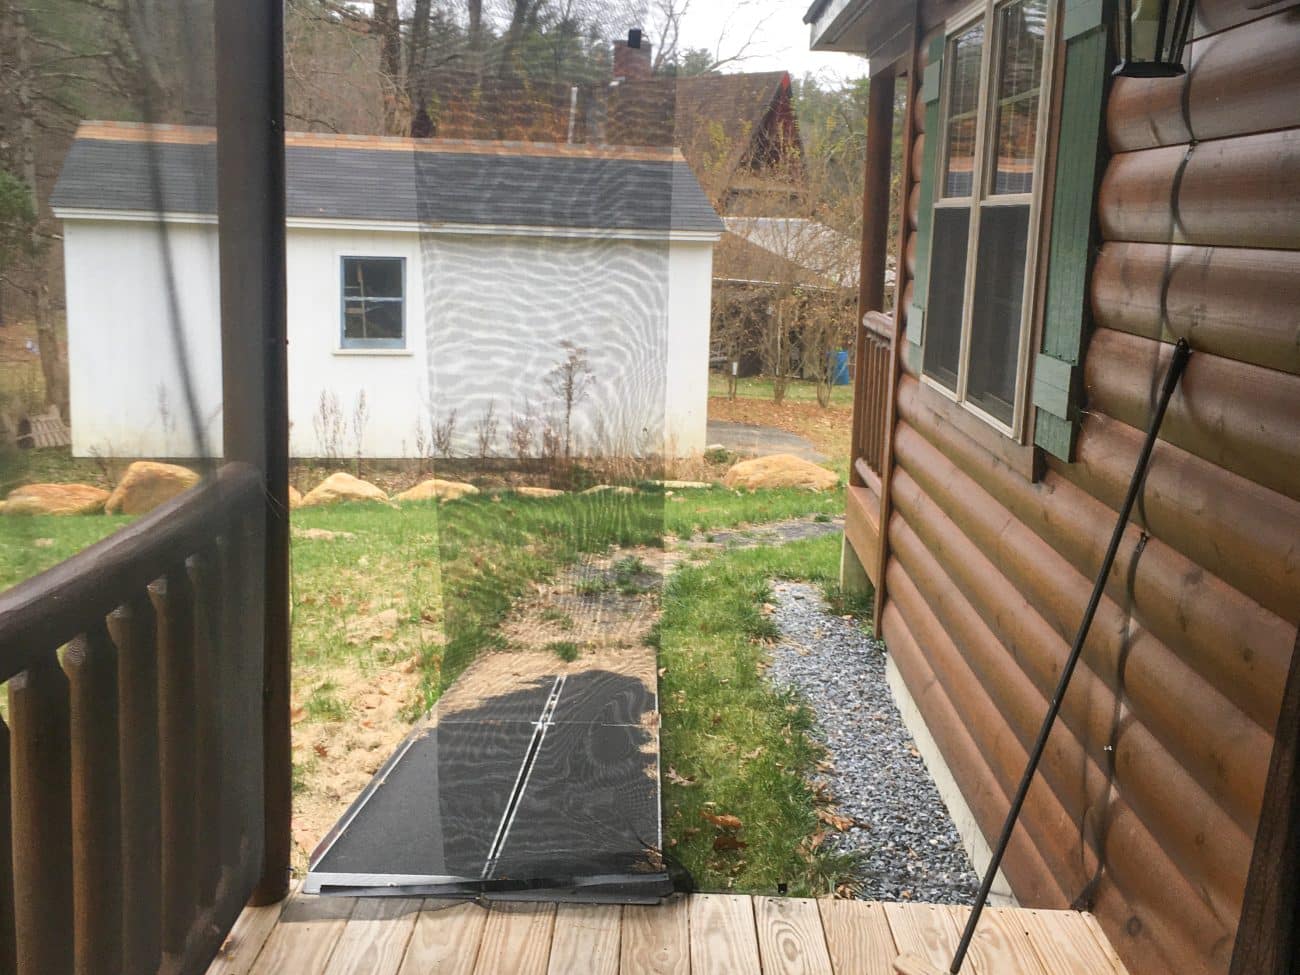 Settler Modular home cabin in Massachusetts